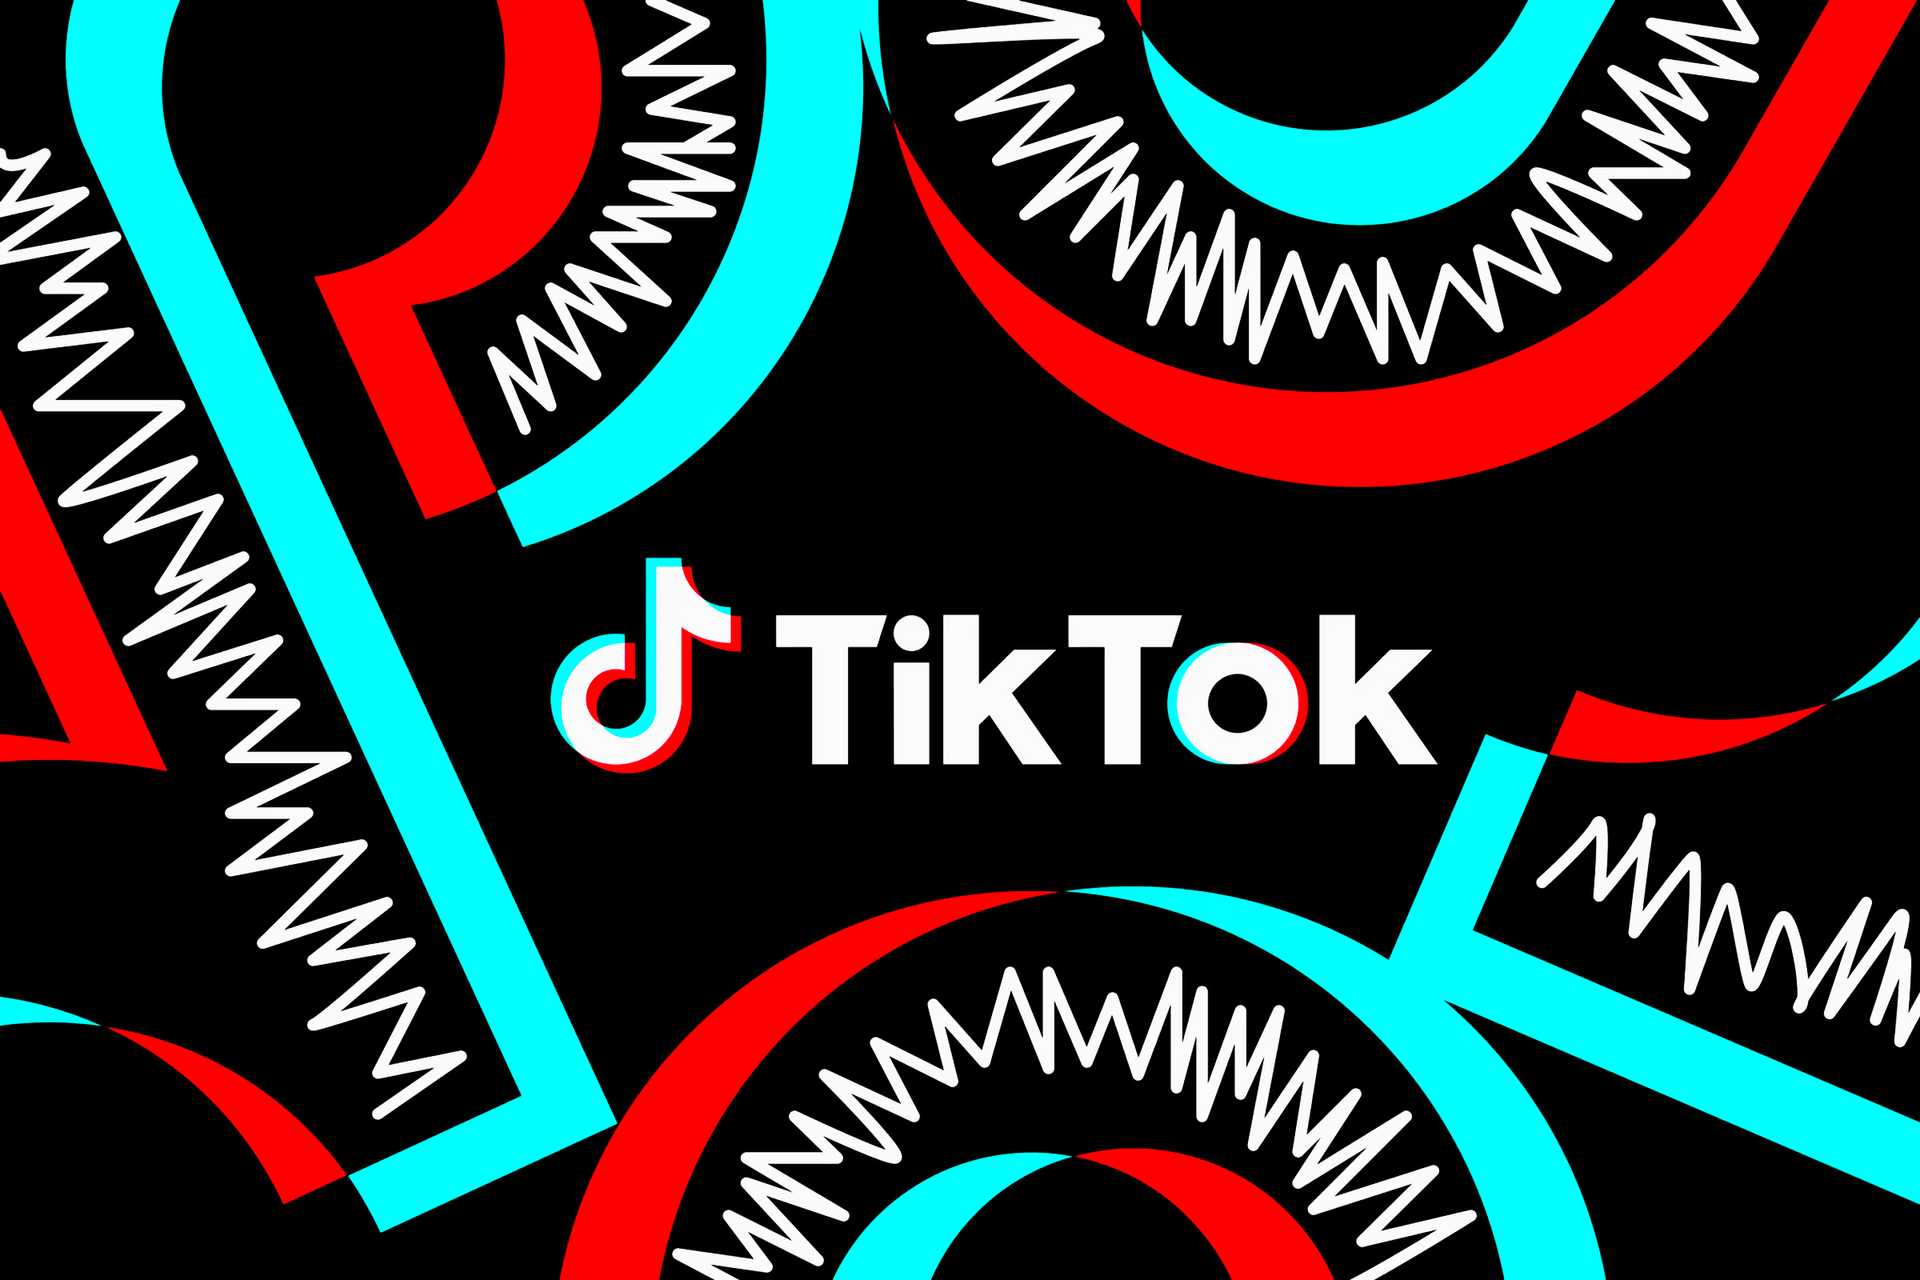 Liên minh Châu Âu (EU) triển khai cuộc điều tra lớn về TikTok. (Ảnh: Nick Barclay / The Verge)